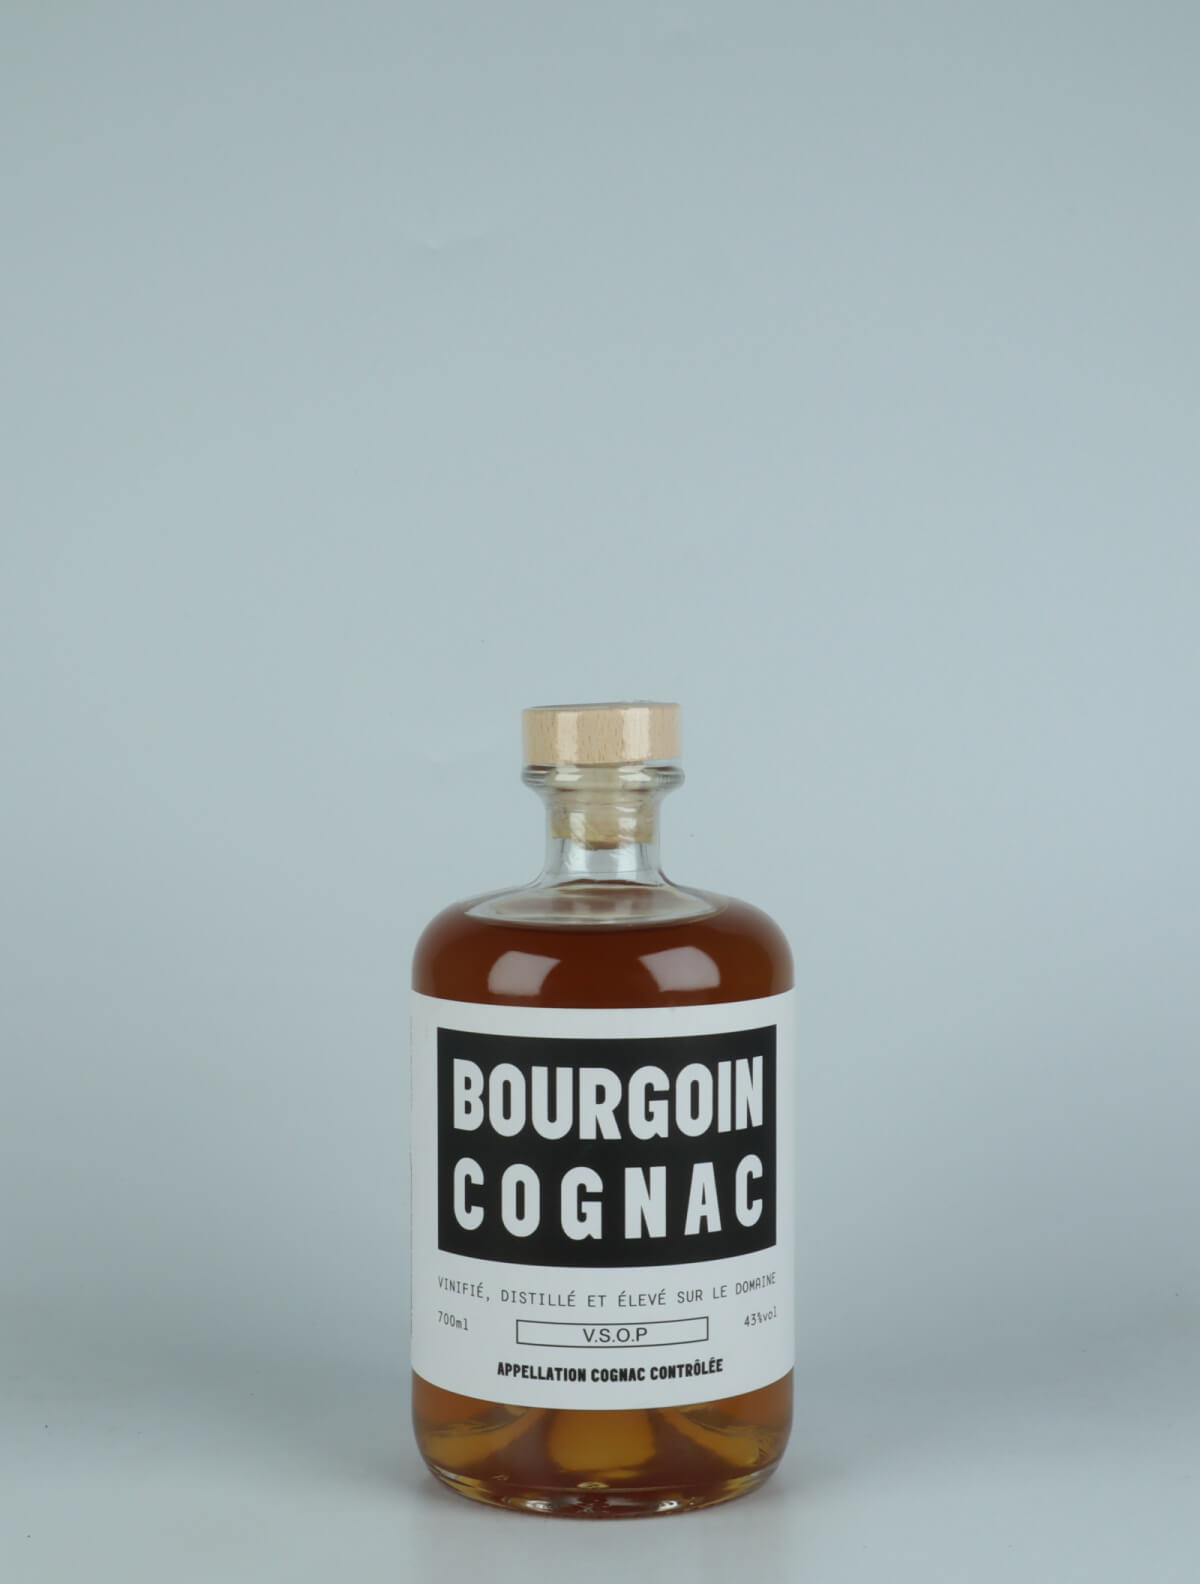 En flaske N.V. Cognac VSOP - 5 Years Old Spiritus fra Bourgoin Cognac, Cognac i Frankrig